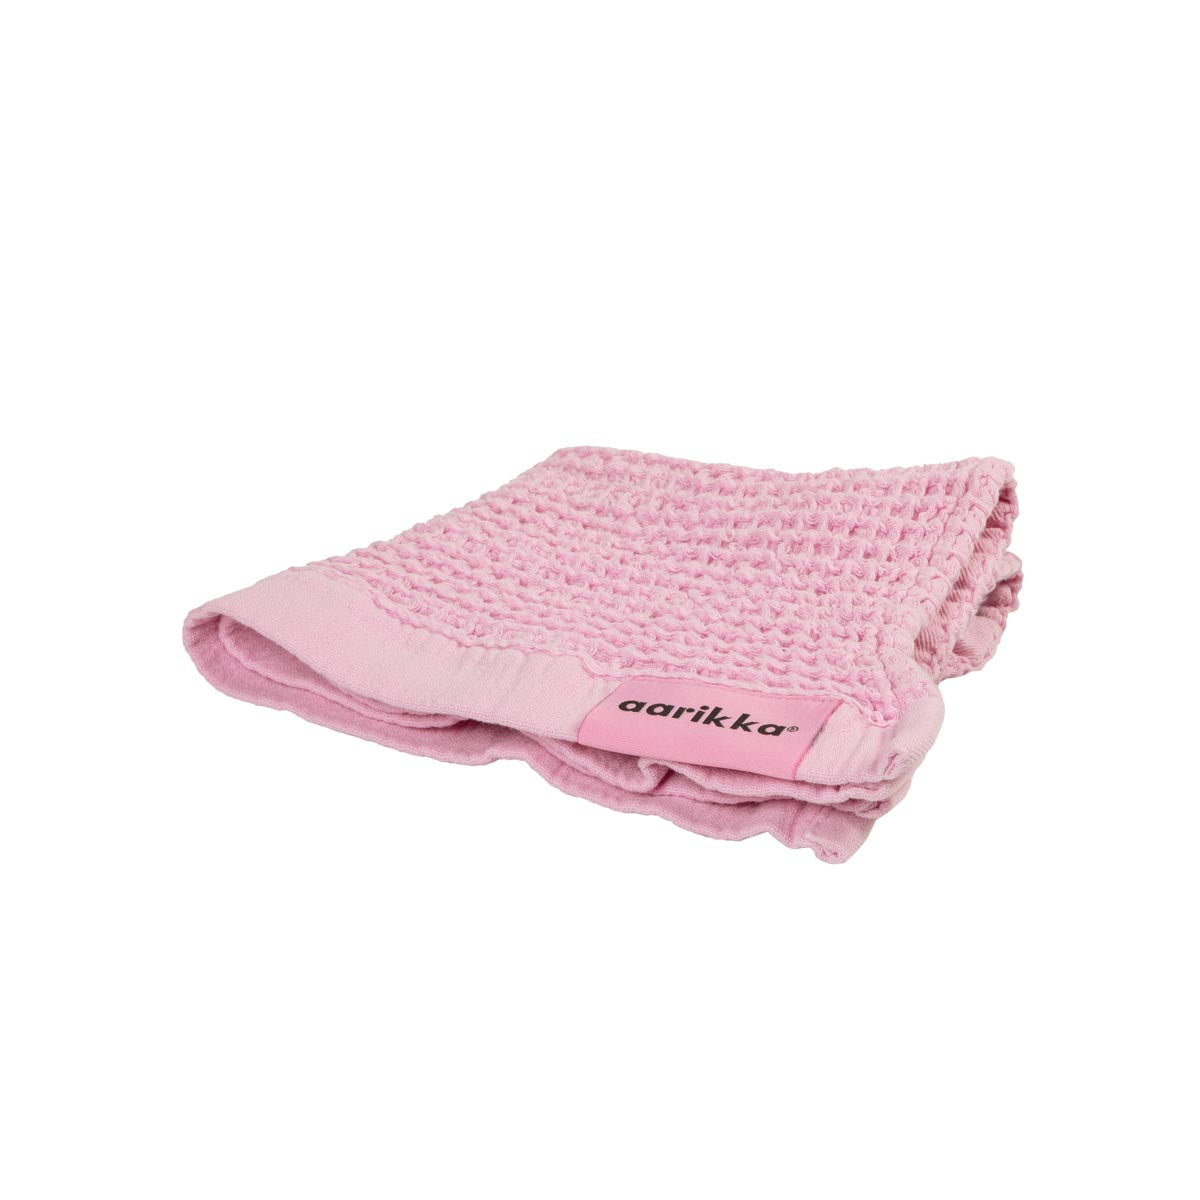 Nuppu face towel, pink